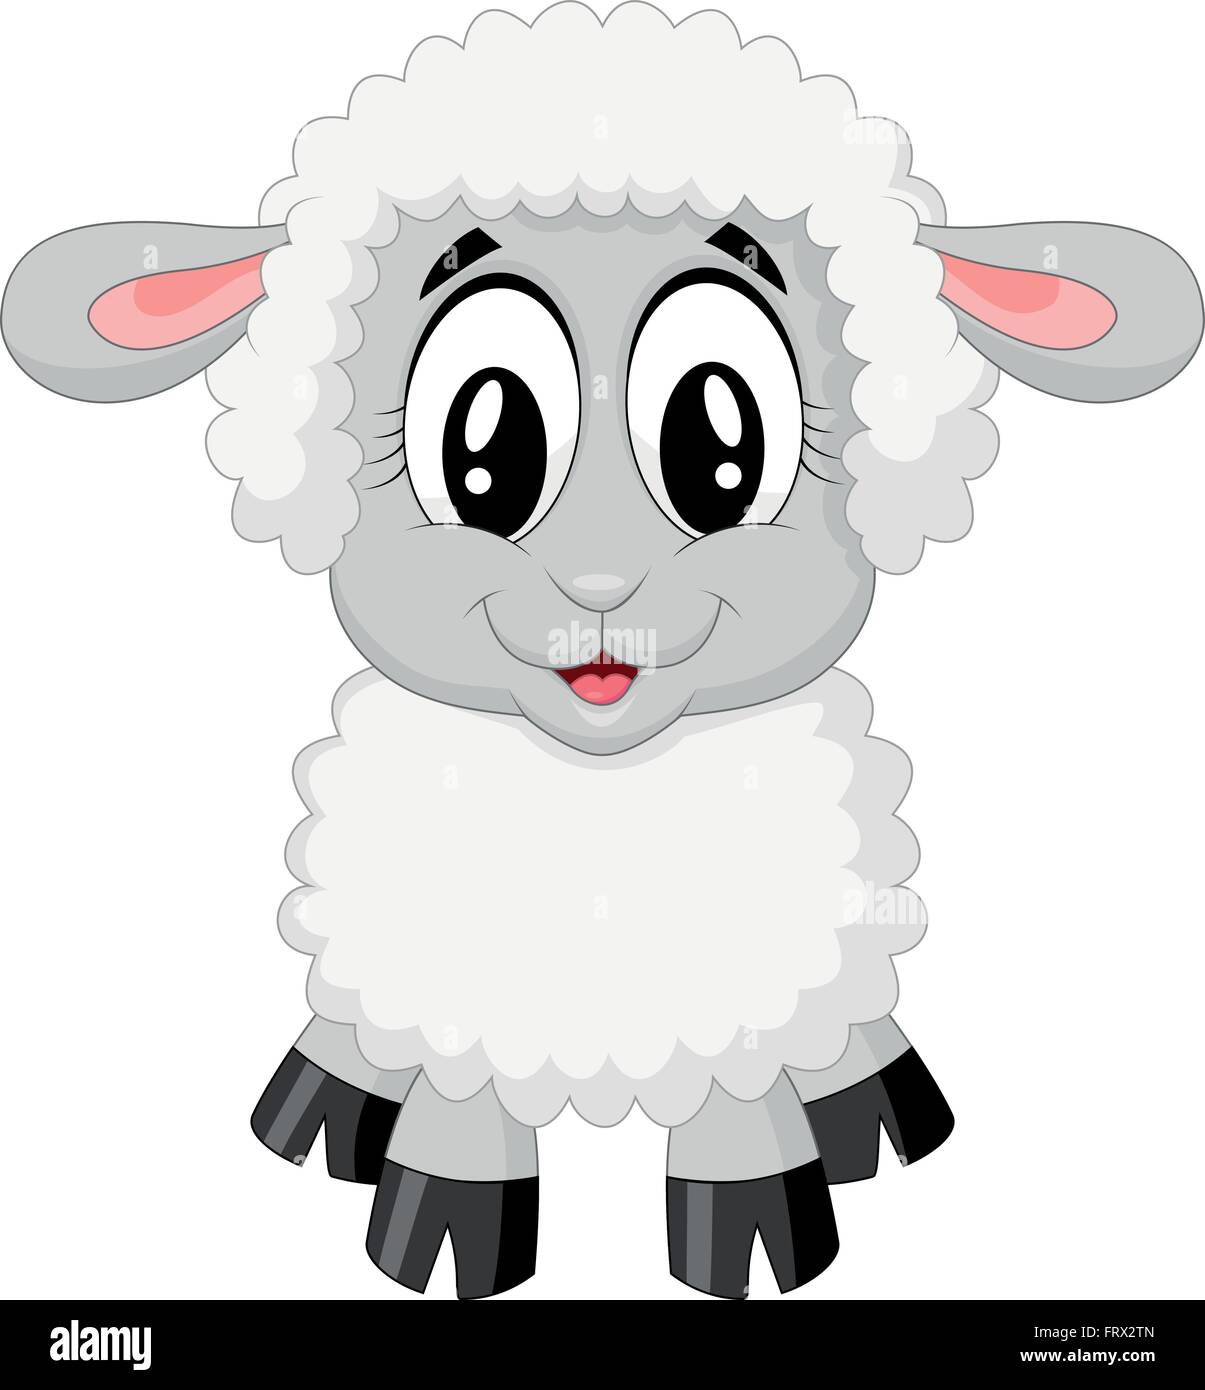 Cute sheep cartoon Stock Vector